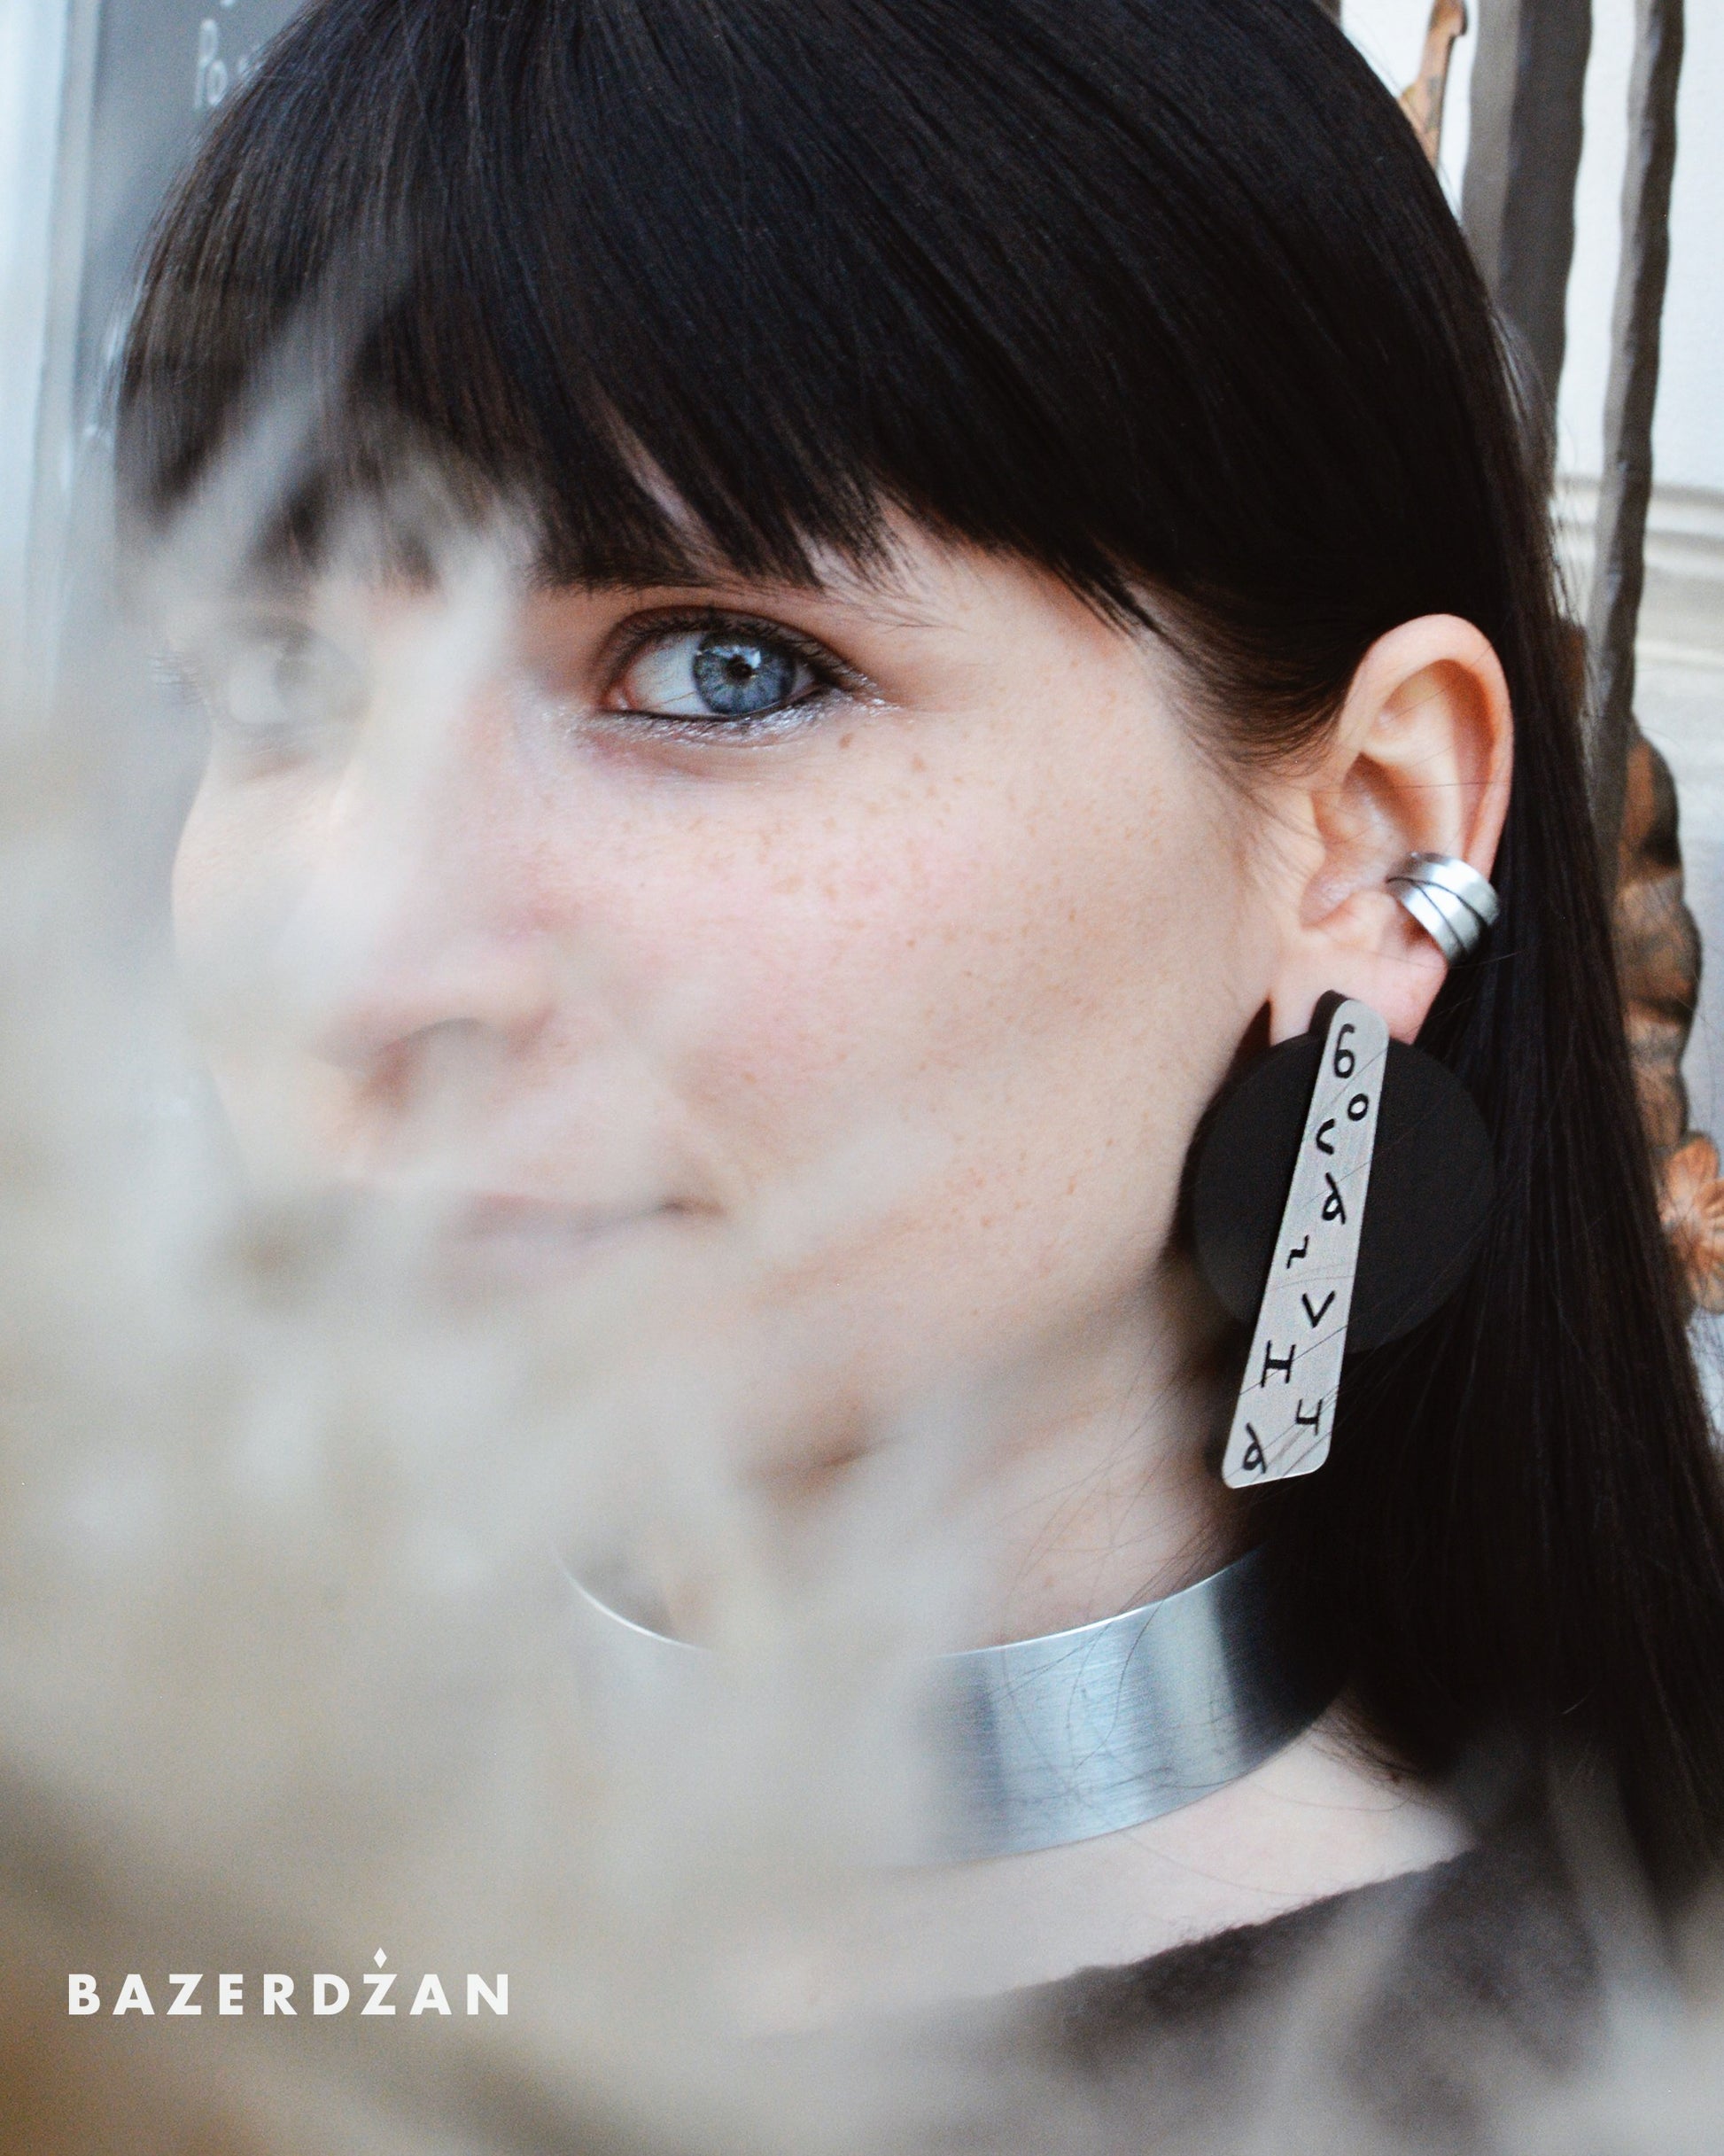 Bosančica Earrings - by IVYQ studio - Bazerdzan